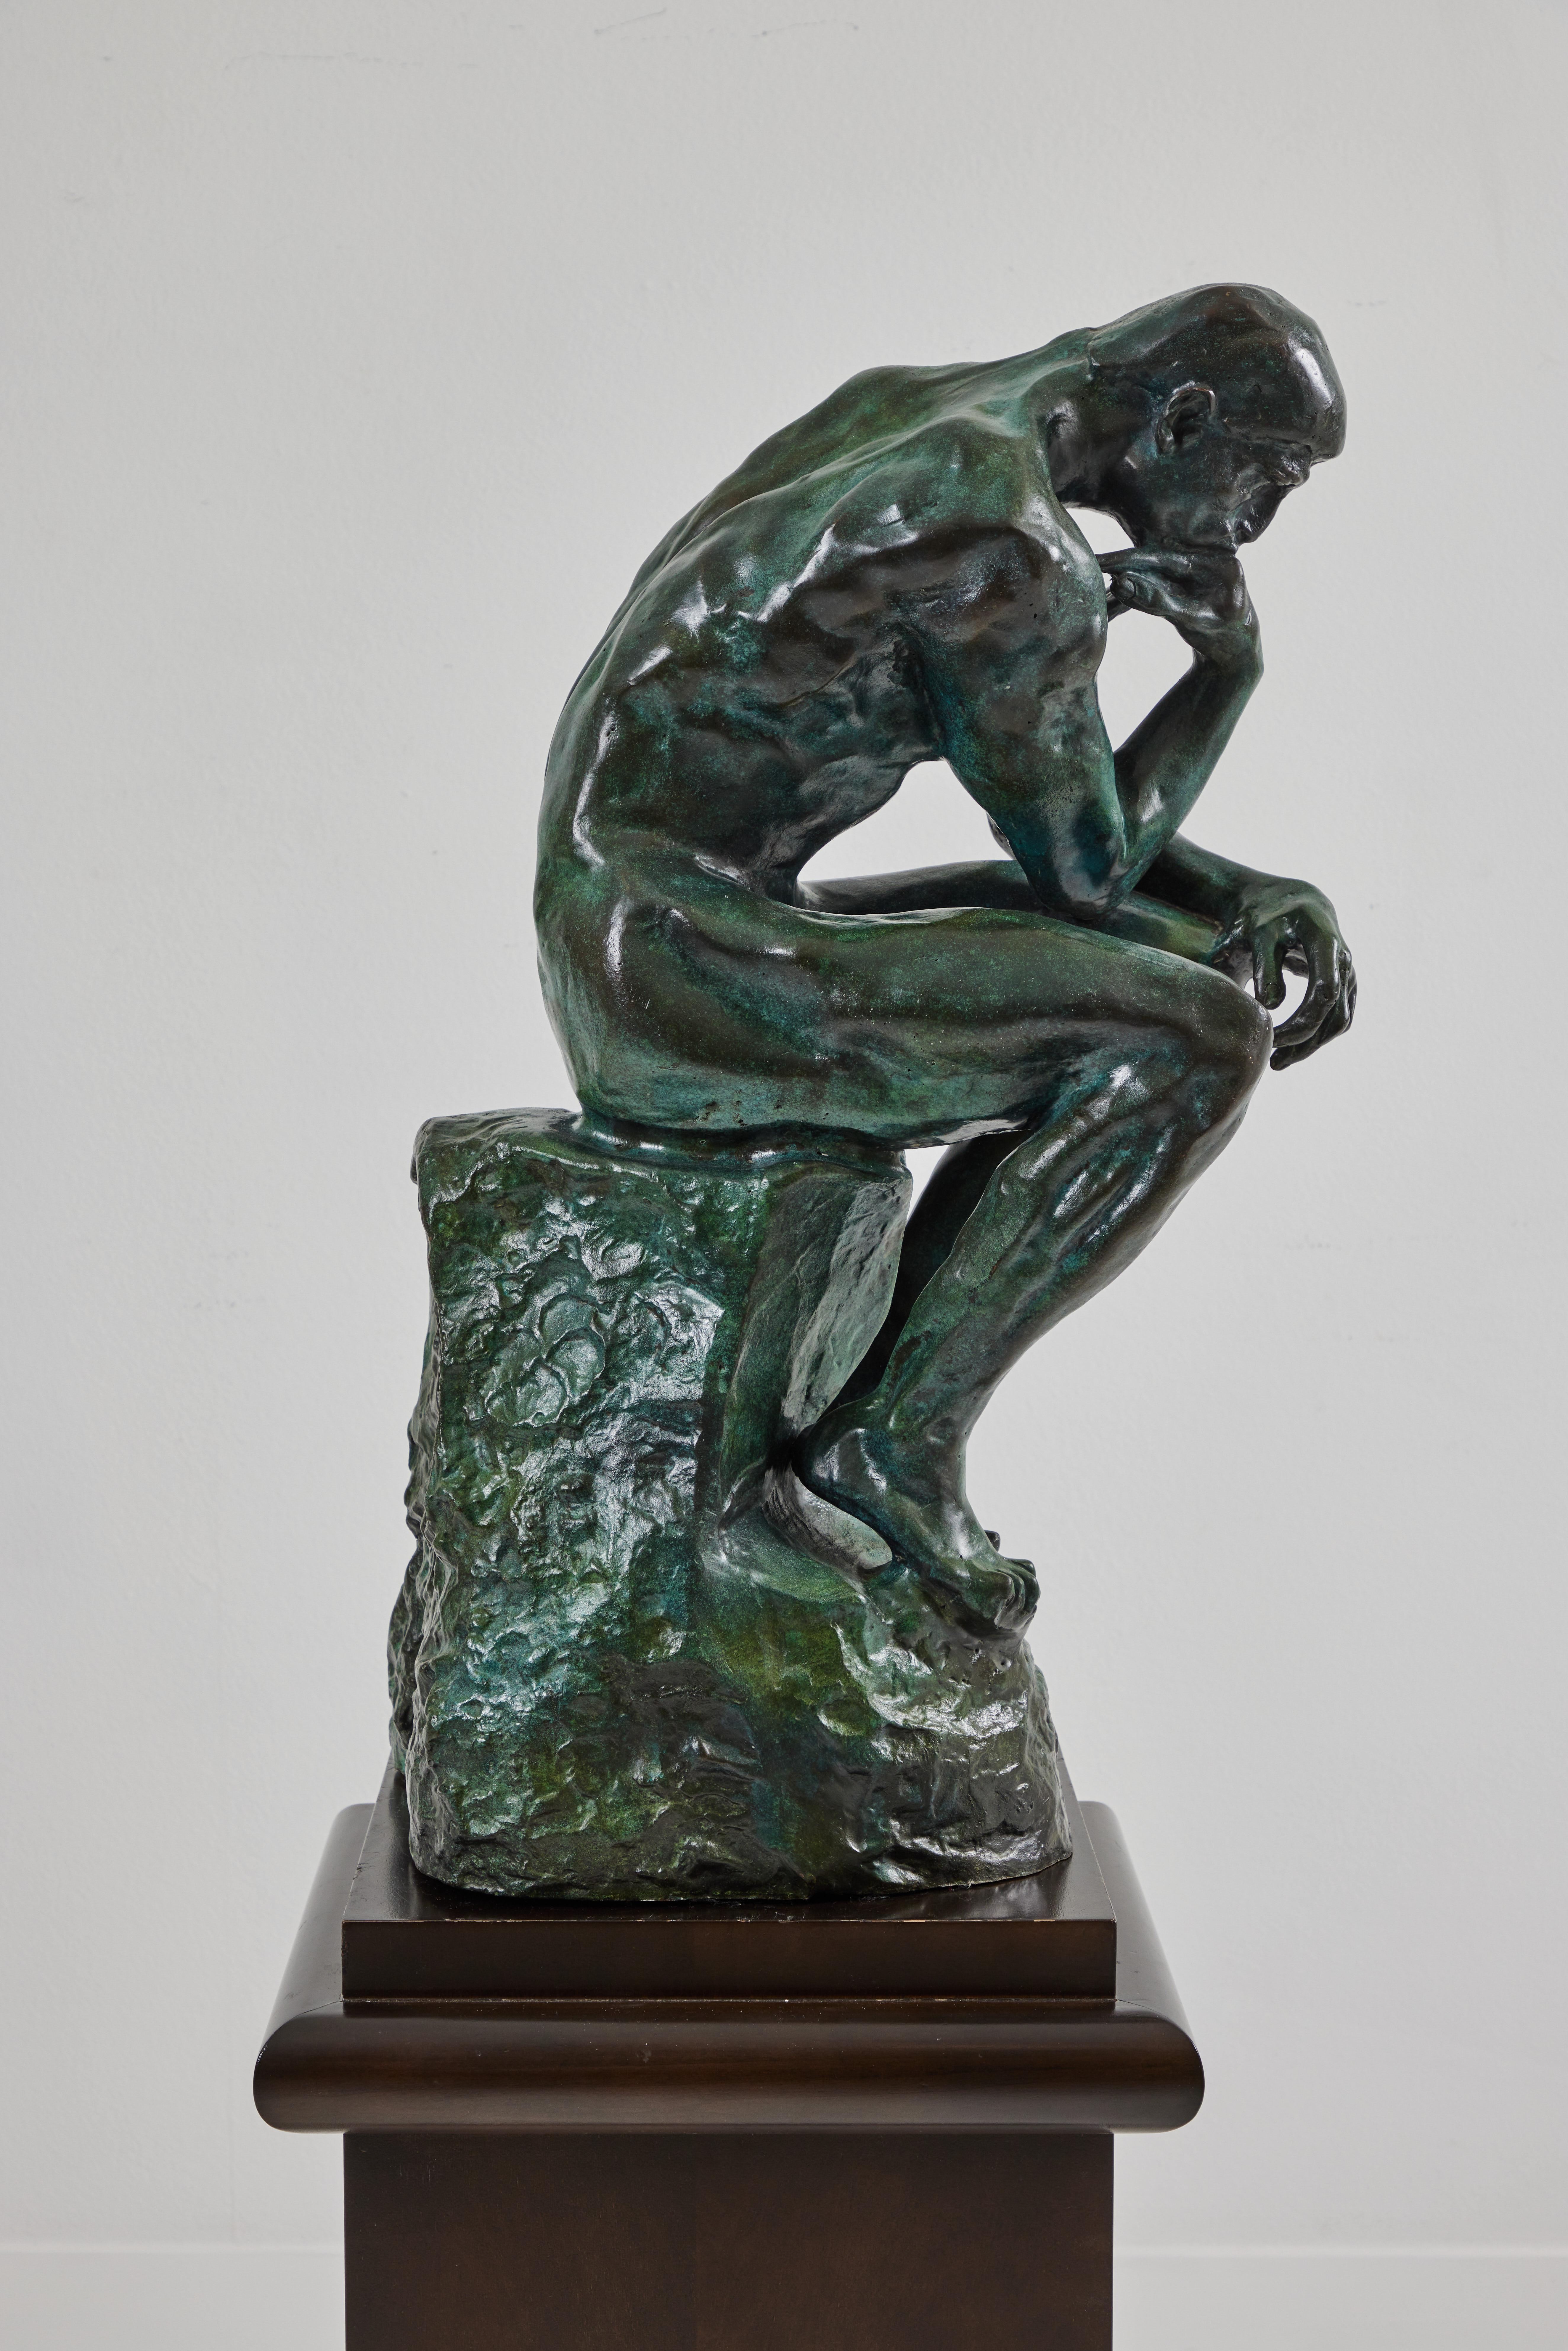 Moulage Grande fonte de bronze du Penseur « Le Penseur » d'Auguste Rodin